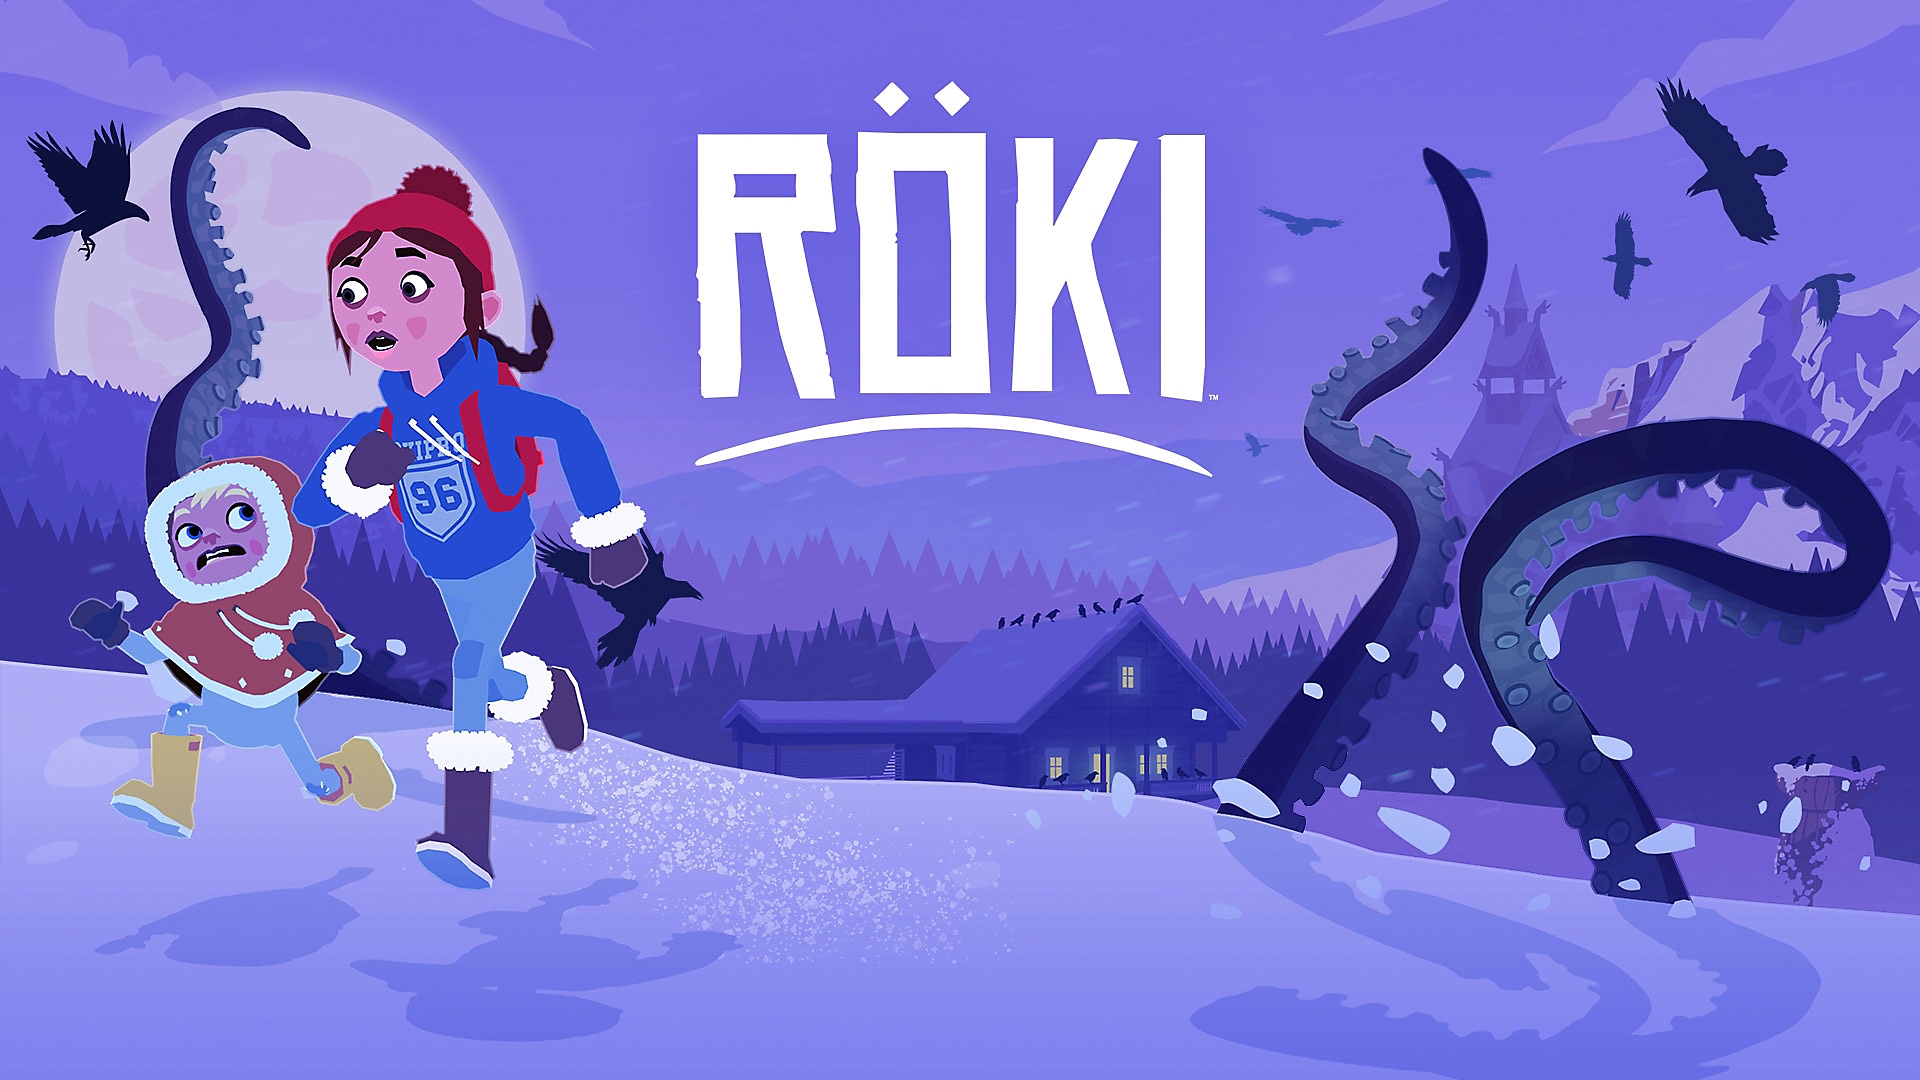 Röki - Release Trailer | PS5